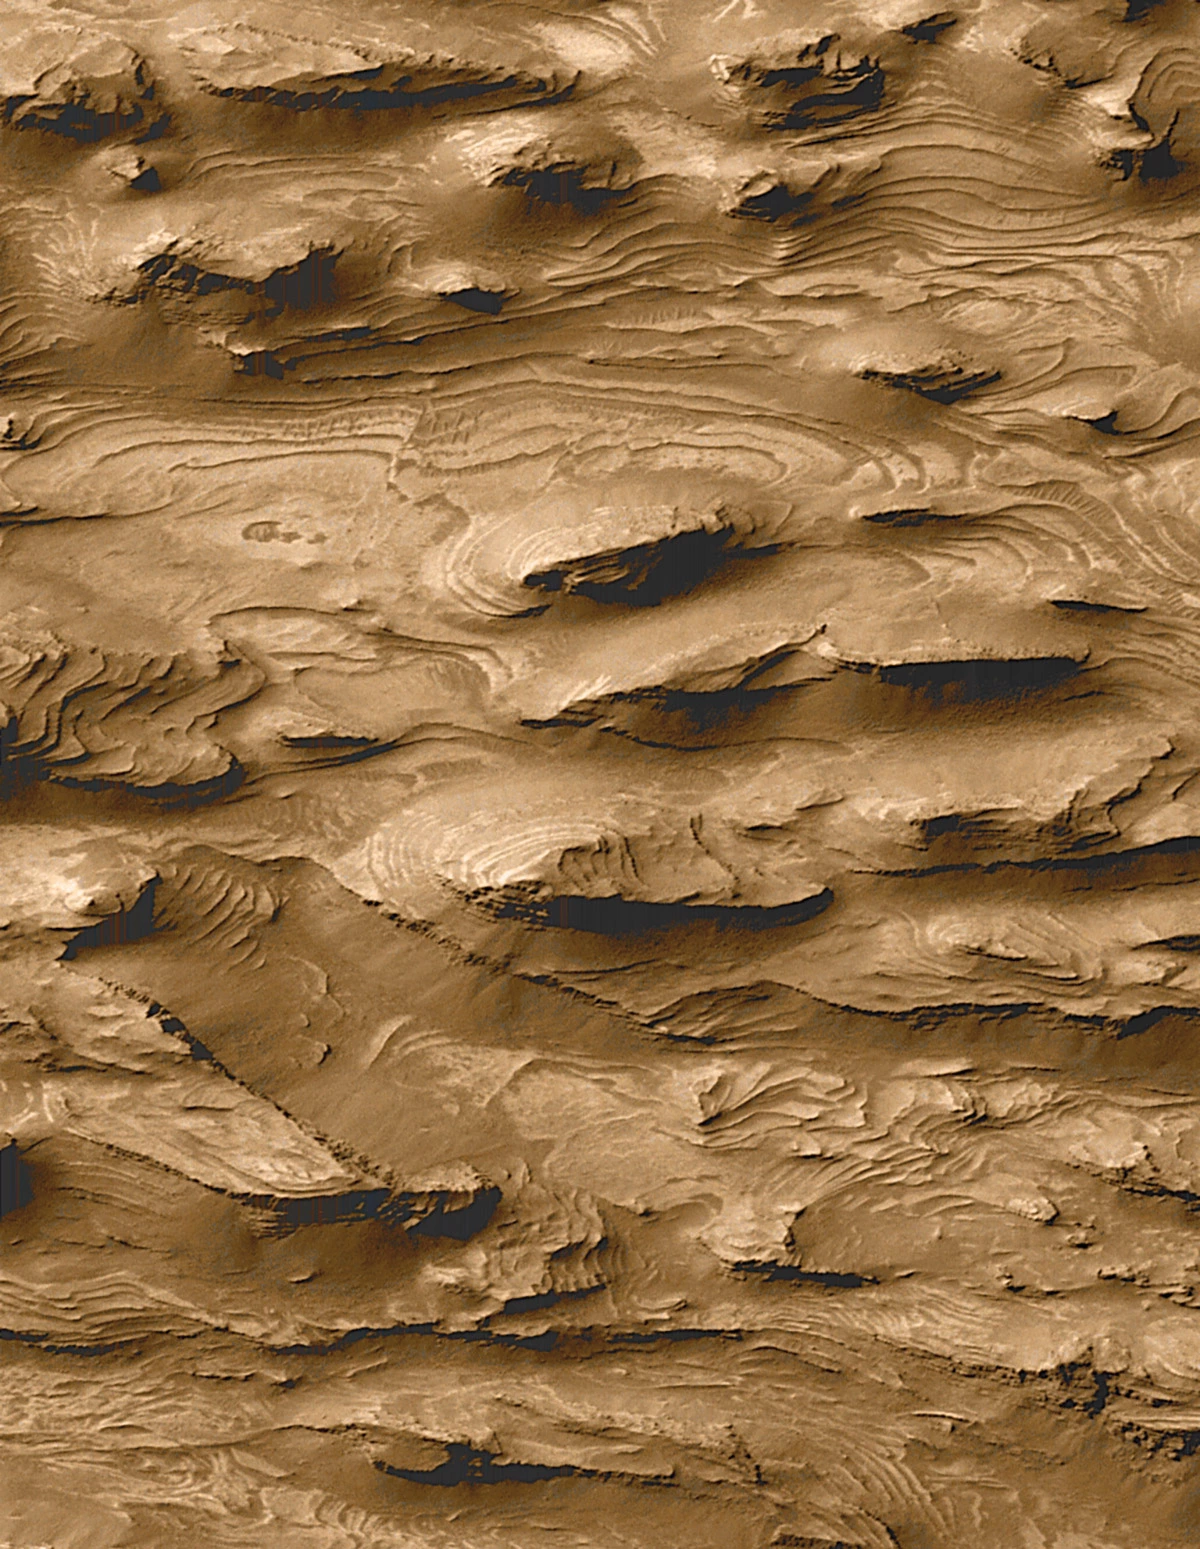 Этот снимок поверхности Марса, полученный в 2000 году орбитальным аппаратом Mars Global Surveyor , дал исследователям основания полагать, что планета могла быть покрыта водой в ранний период своего существования. Позднее эти основания <a href="https://dx.doi.org/10.1126/sciadv.abn8555">подтвердились</a>